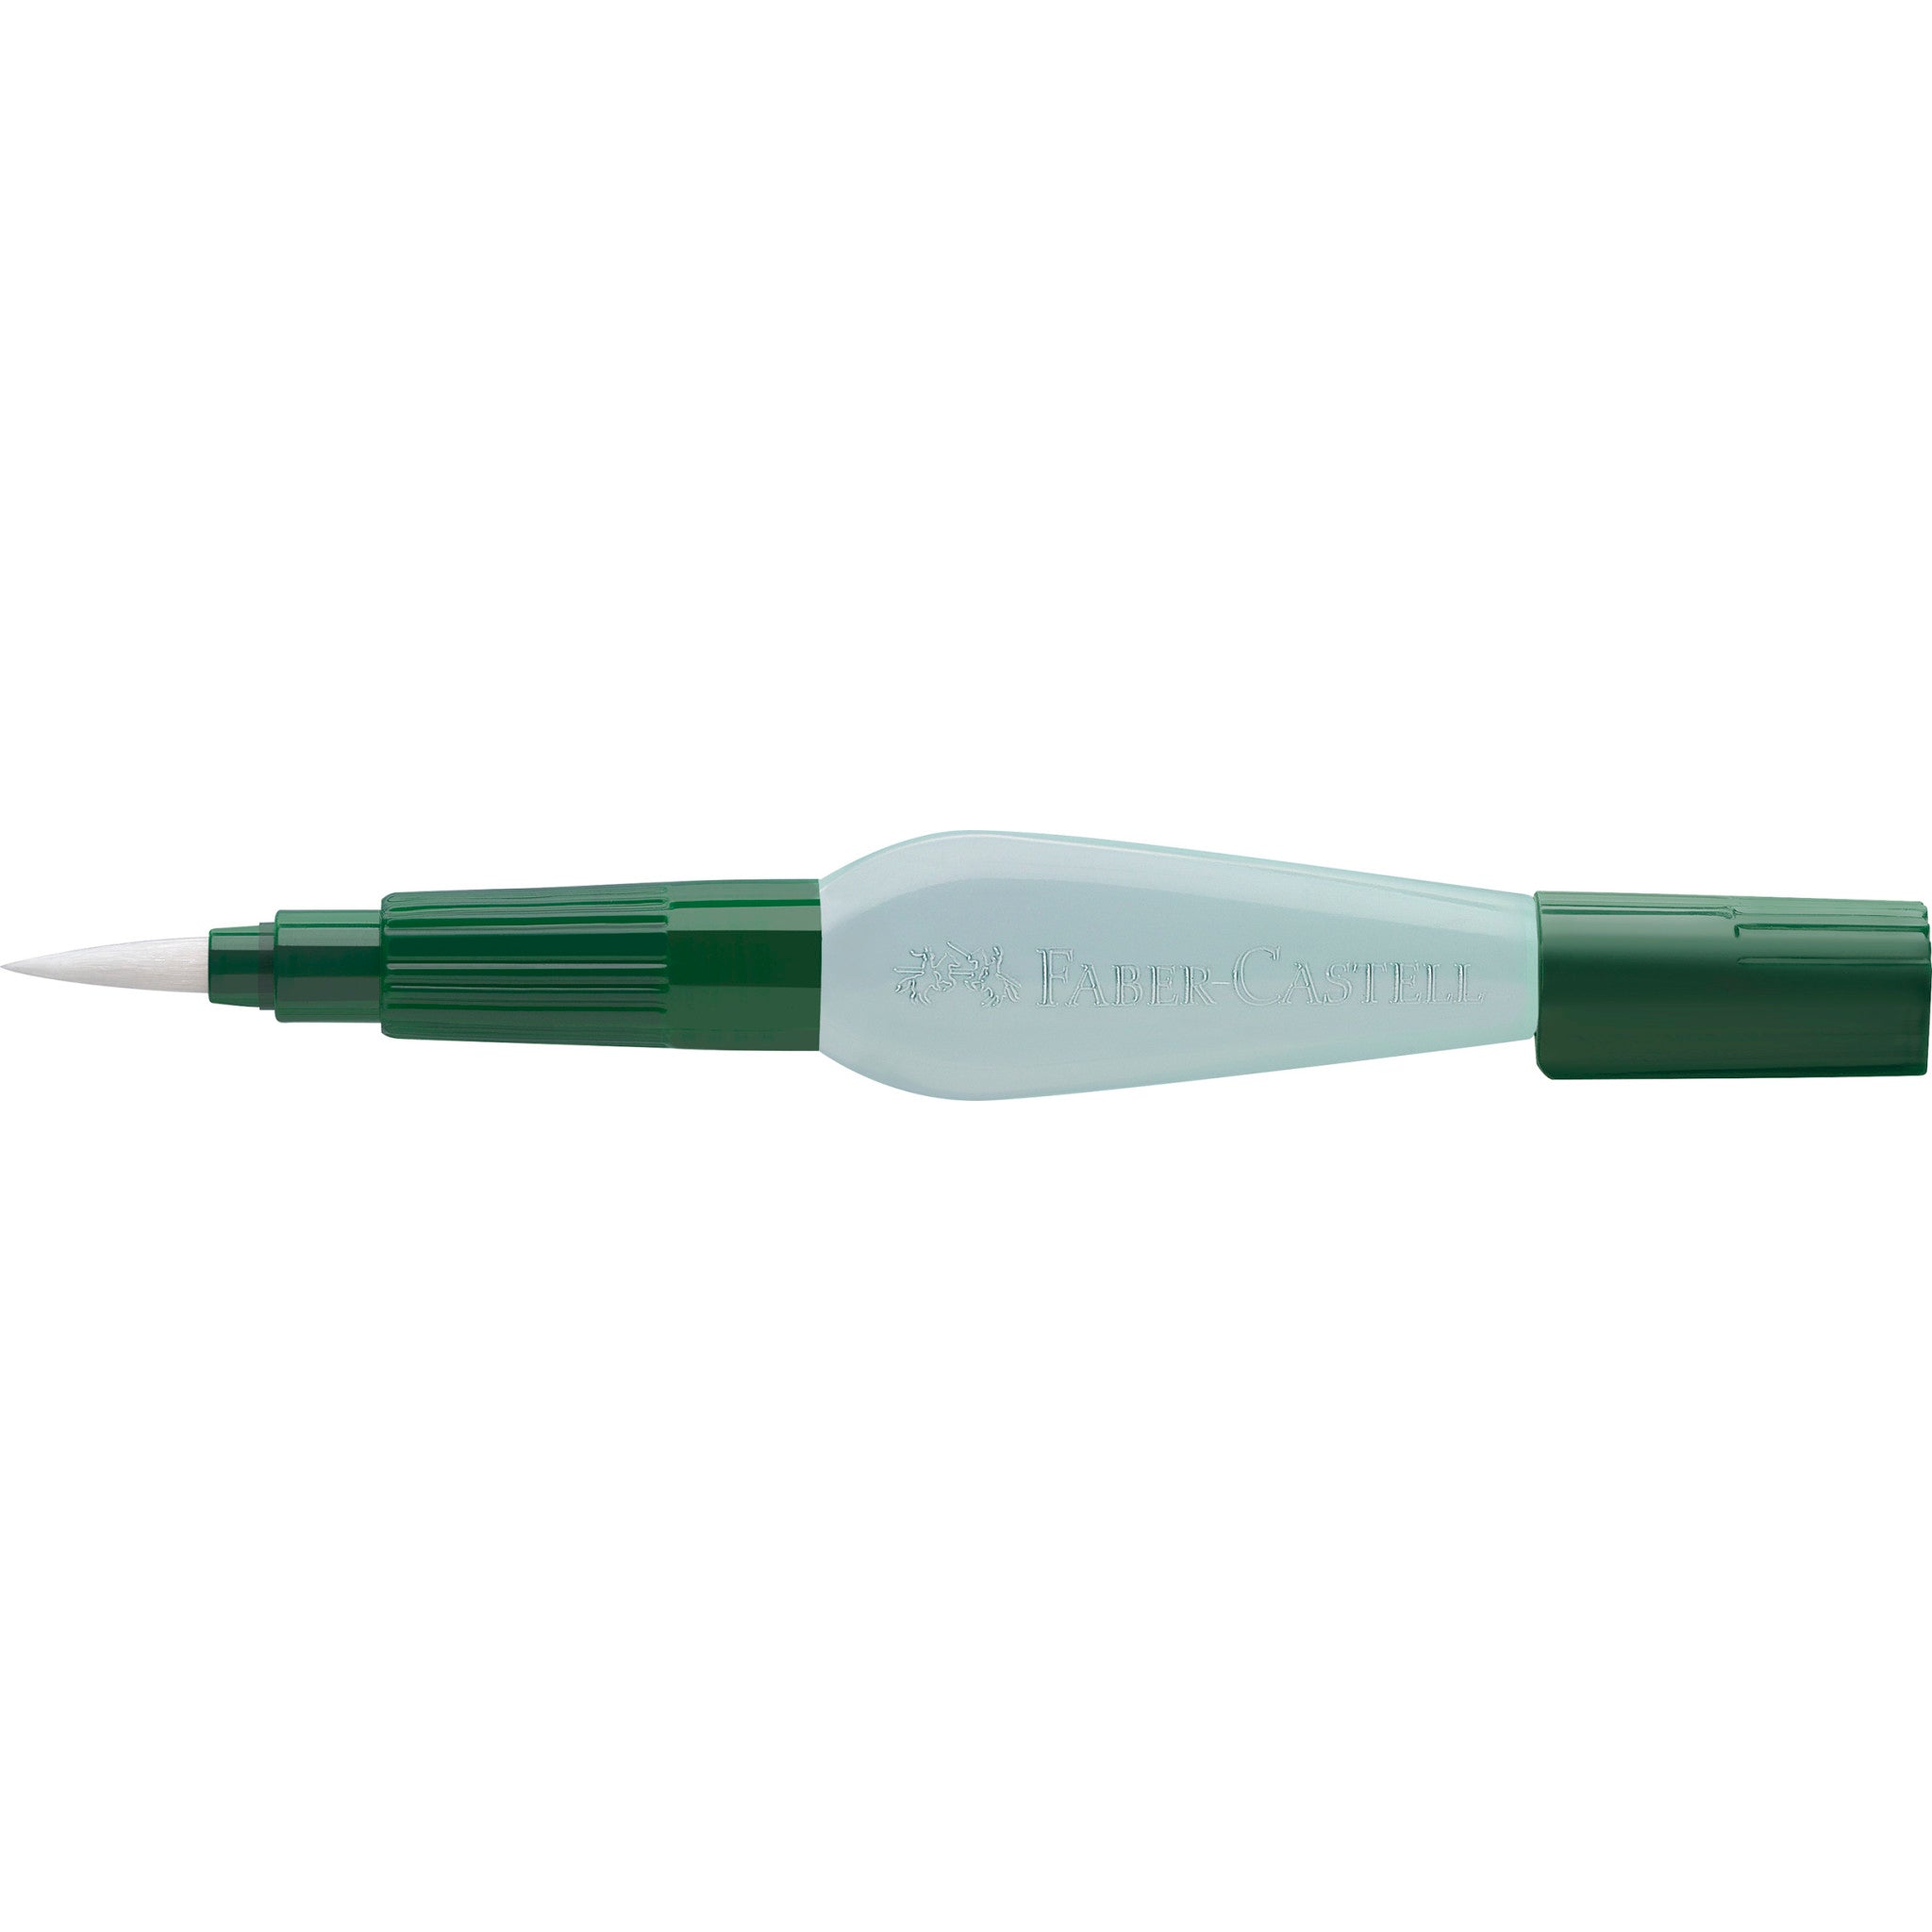 Art Supplies Water Brush, Fiber Hair Brush Eraser, Fiber Hair Depault Pen